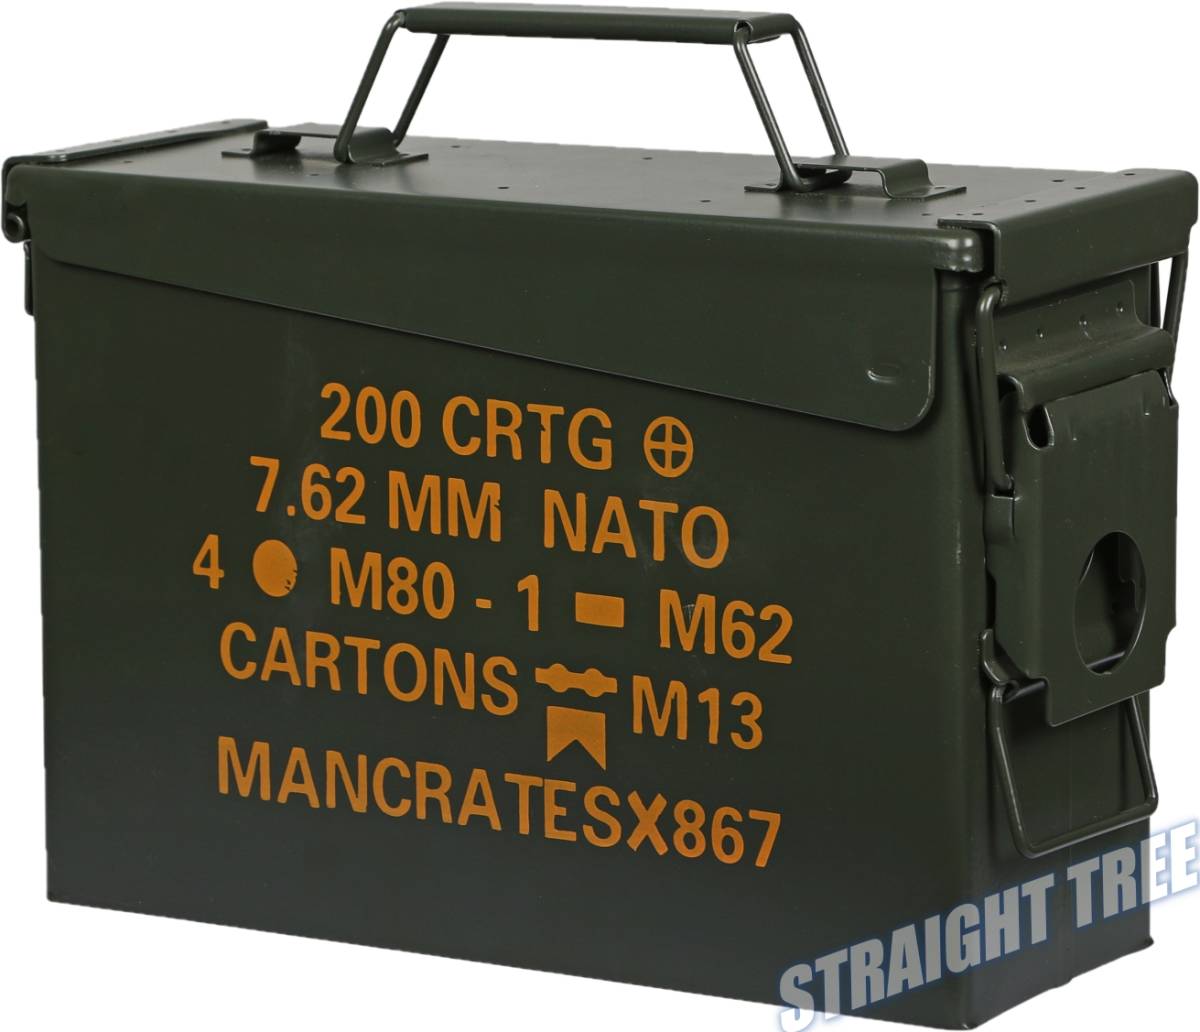 ツールボックス 工具箱 ツールケース メタルボックス ストレージボックス サバゲー アンモボックス アモカン ケース 弾薬箱 箱